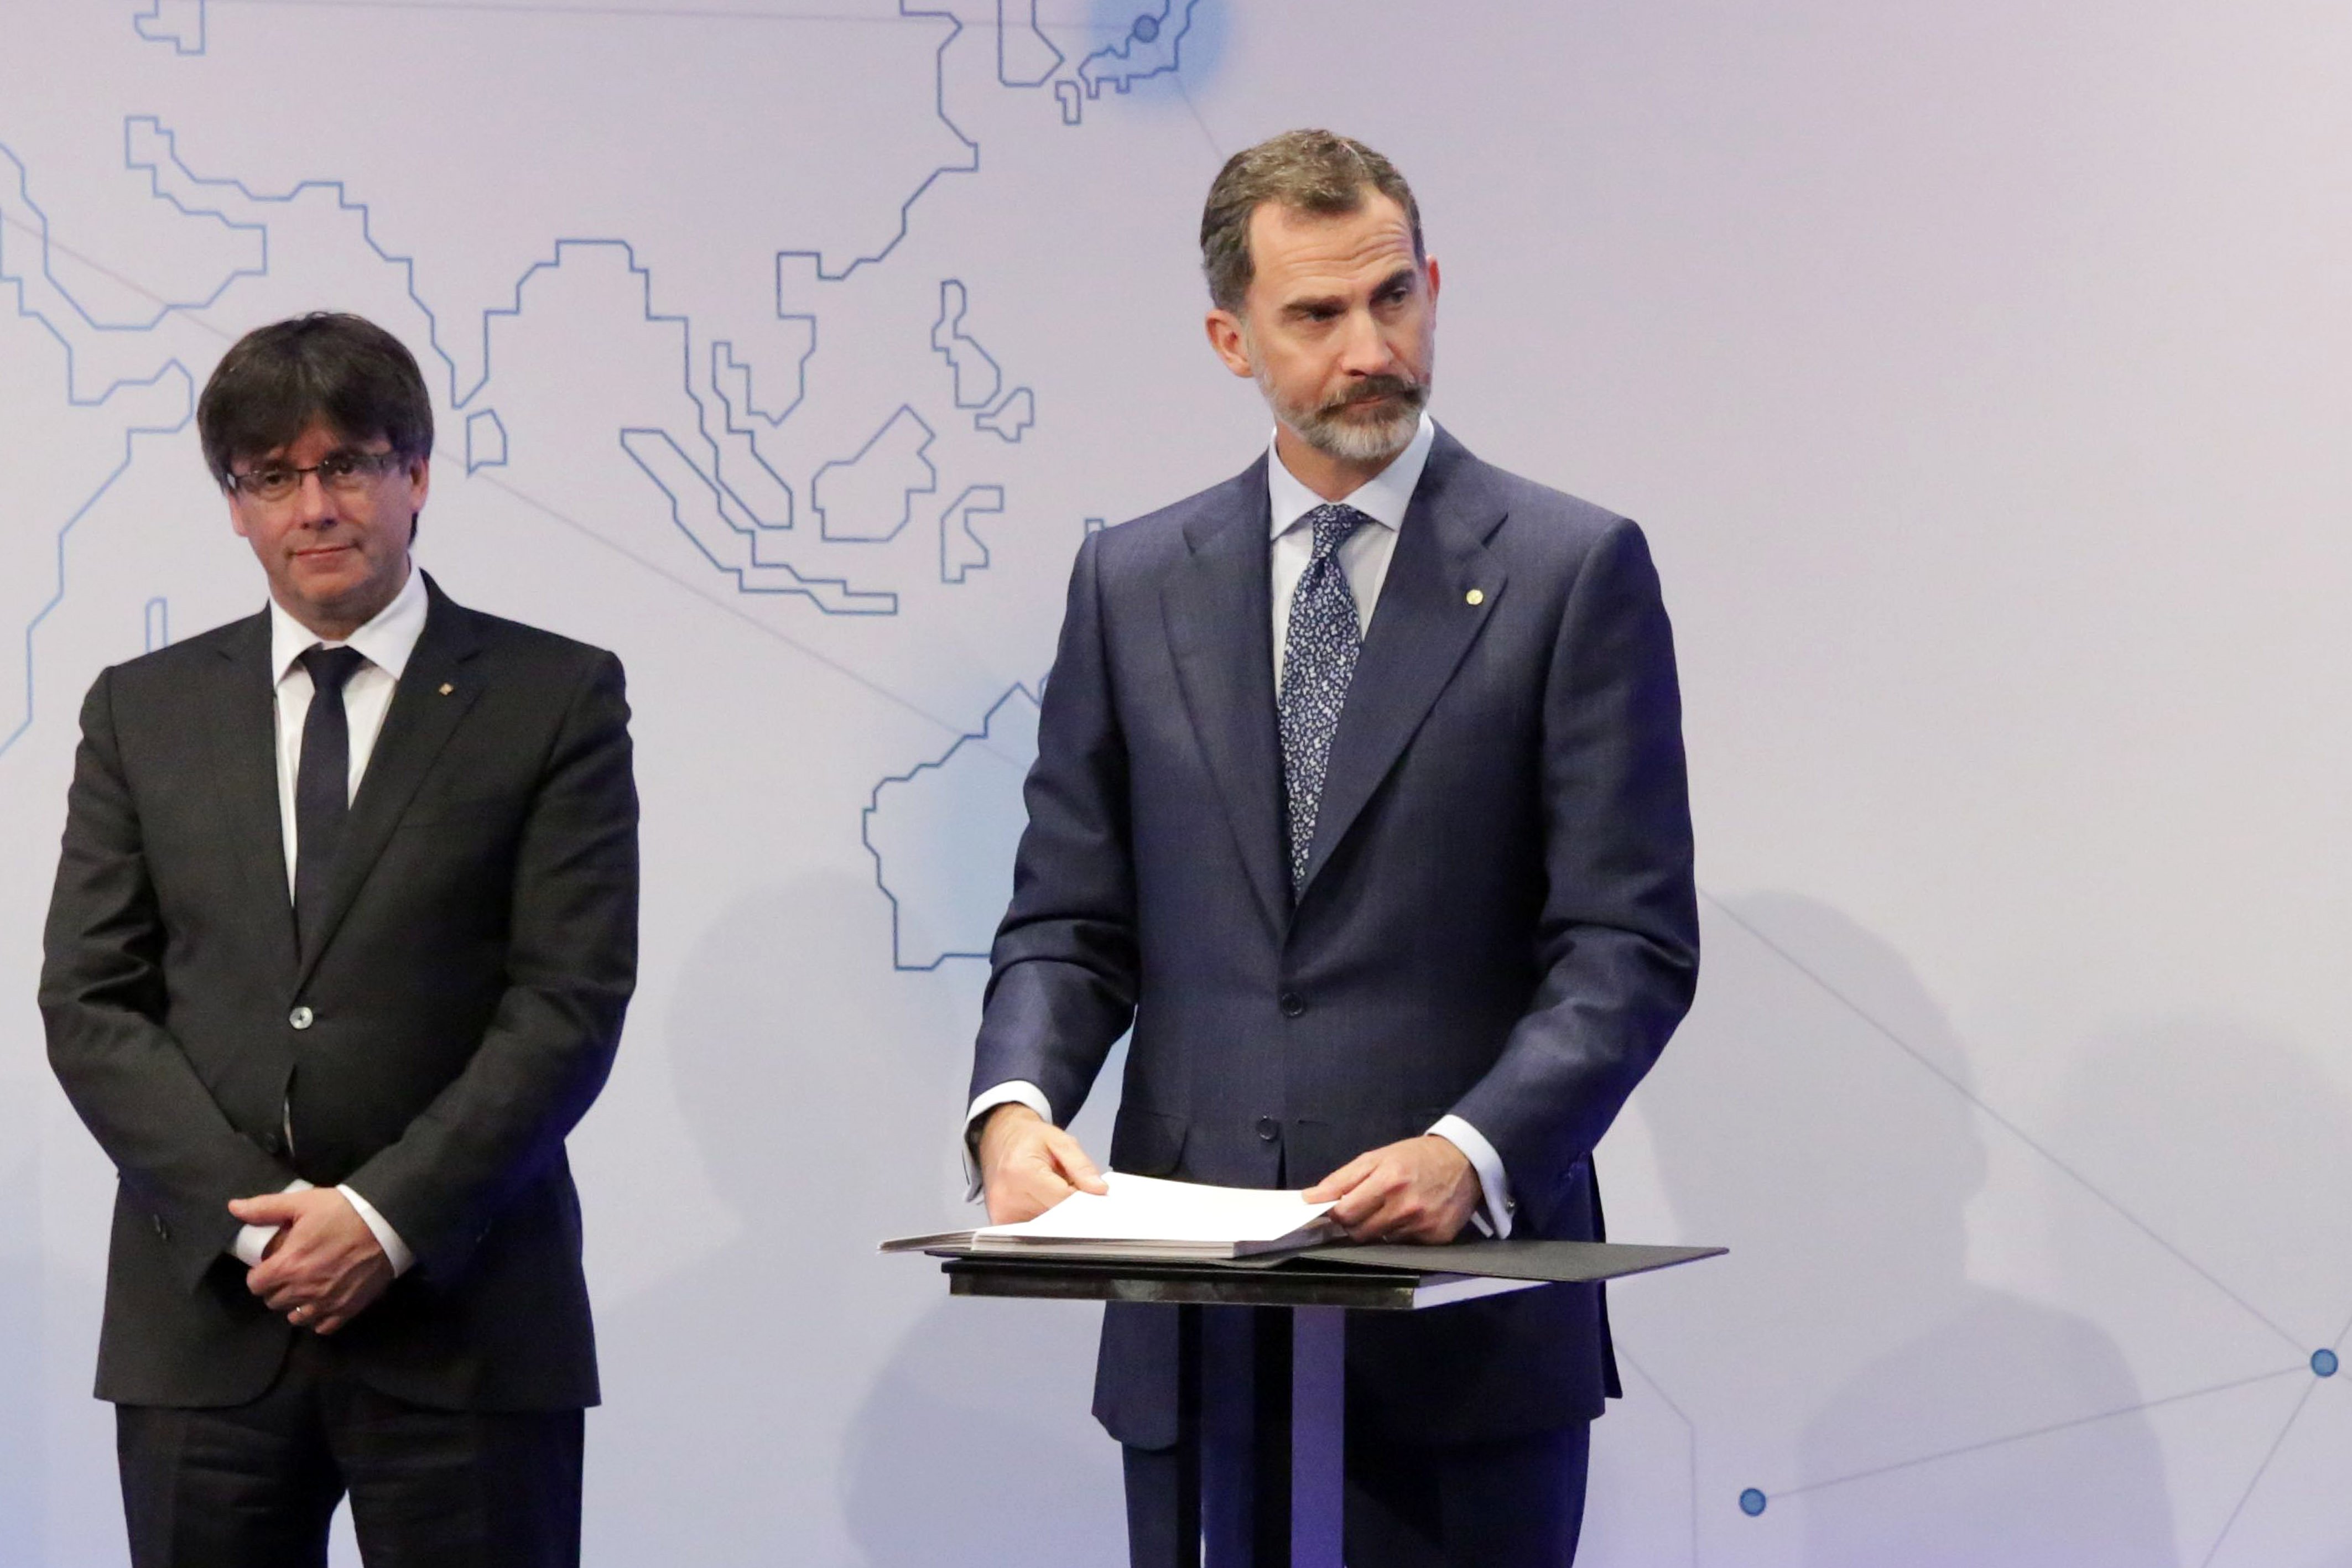 Puigdemont, sarcástico: "¿El procés separa familias? Será a la Familia real"